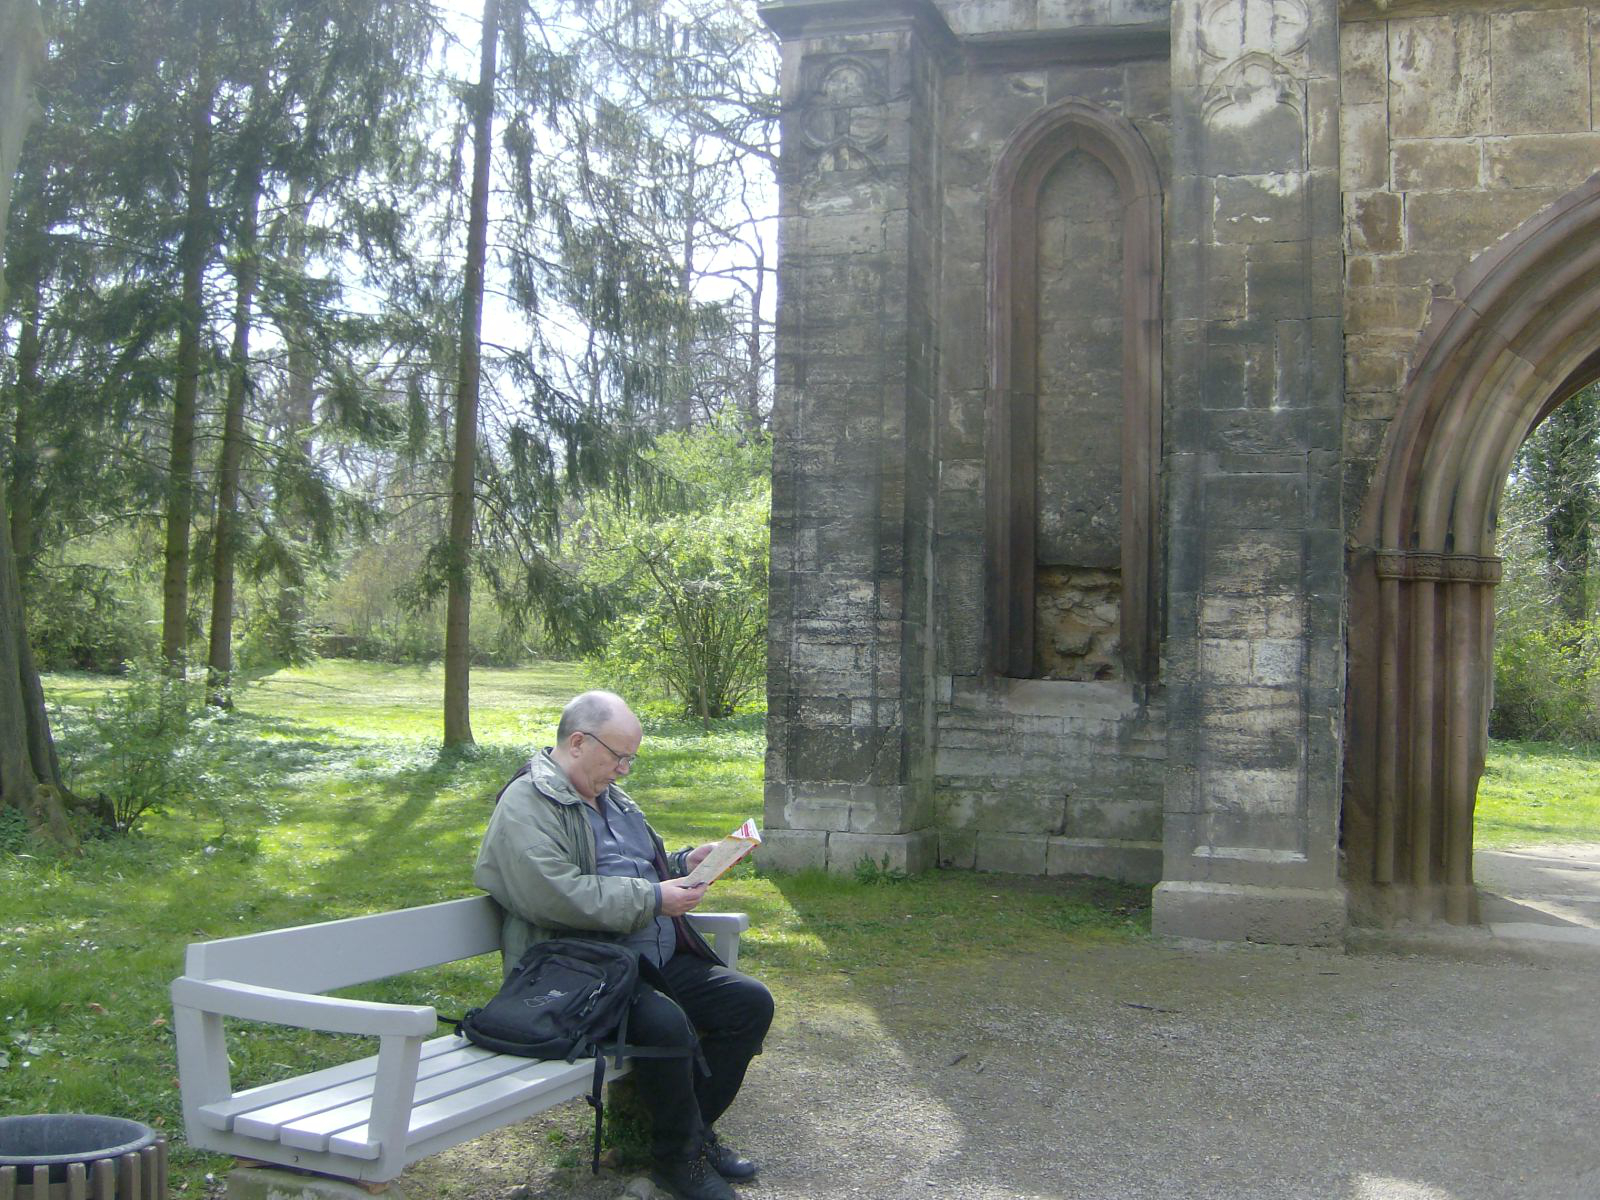 Farbfoto: Erwin Thomasius auf einer Parkbank vor der echten Ruine im Park an der Ilm in Weimar am Sonntag, dem 22. April im Jahre 2012. Fotograf: Bernd Paepcke.